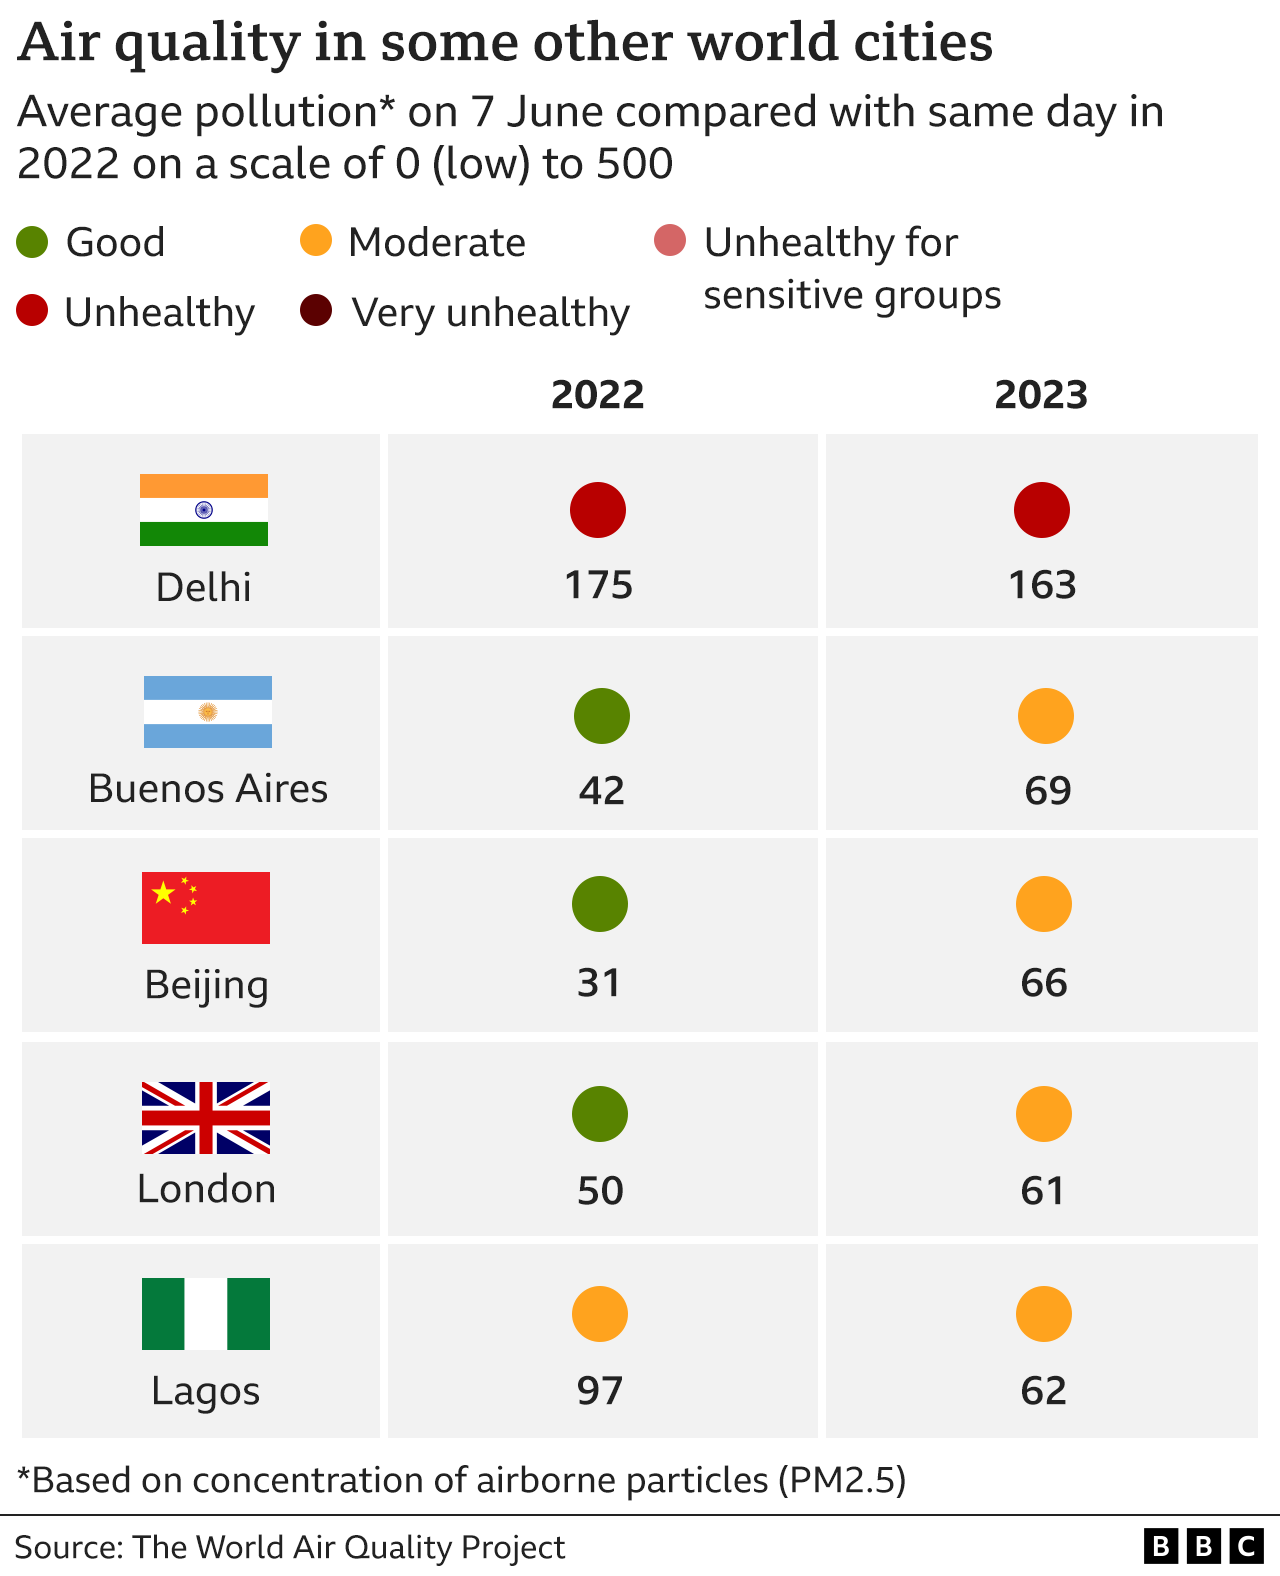 Таблица, показывающая среднее качество воздуха в пяти городах мира 7 июня 2023 г. по сравнению с тем же днем ​​2022 г.: Дели оценивается как нездоровое для здоровья, Лондон, Буэнос-Айрес и Пекин переходят от хорошего к среднему, а Лагос остается умеренным